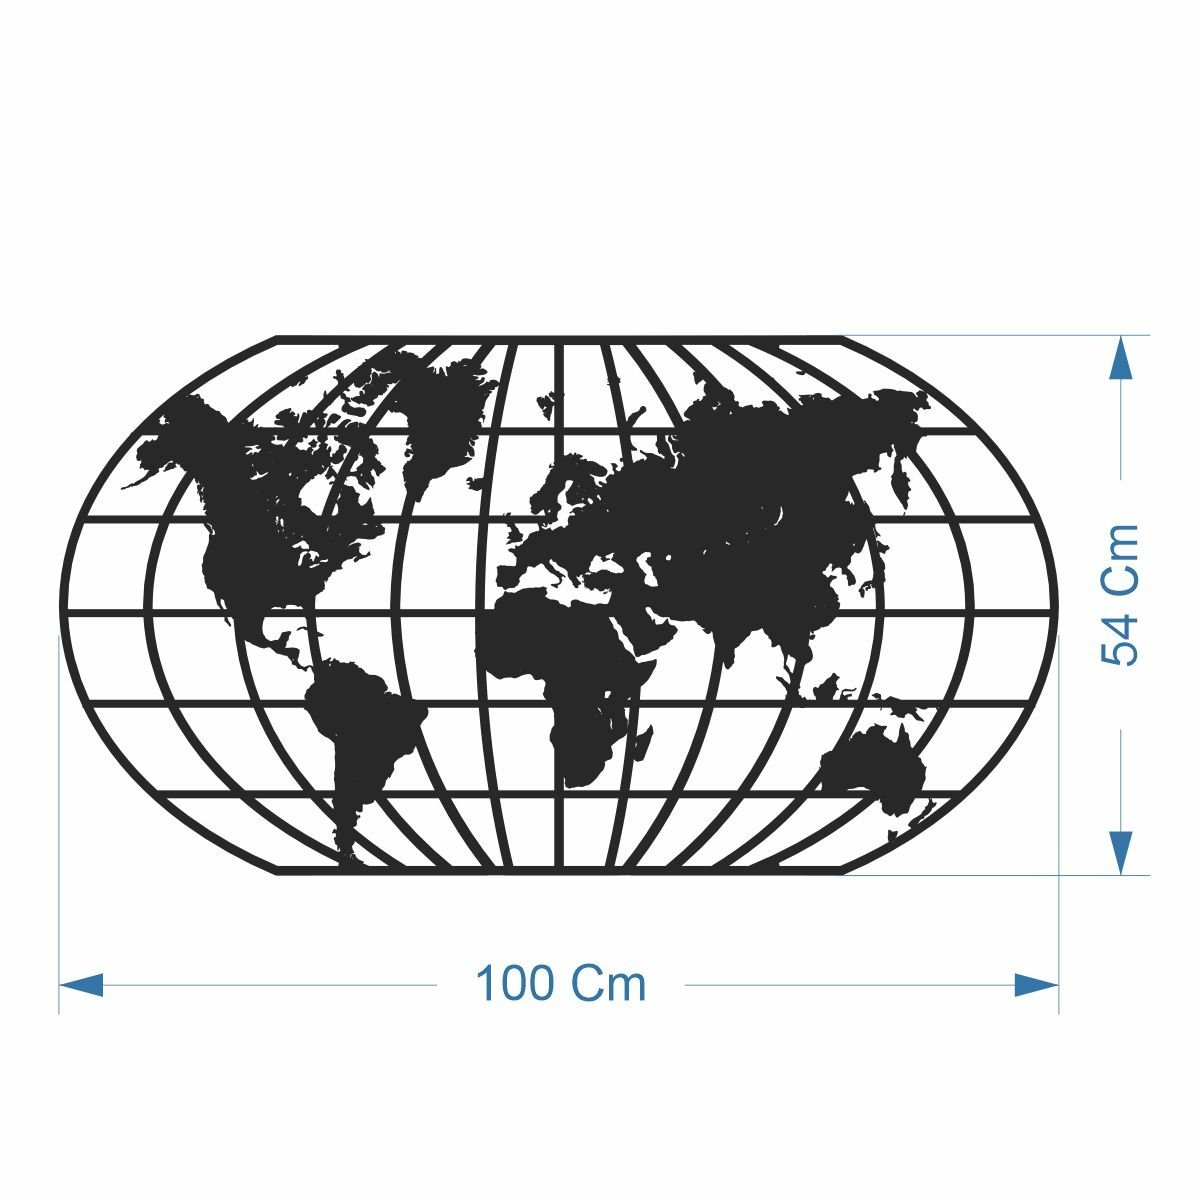 Quadro Decoração Vazado Mapa Mundi World Uno Branco 100x54 Cm - 2